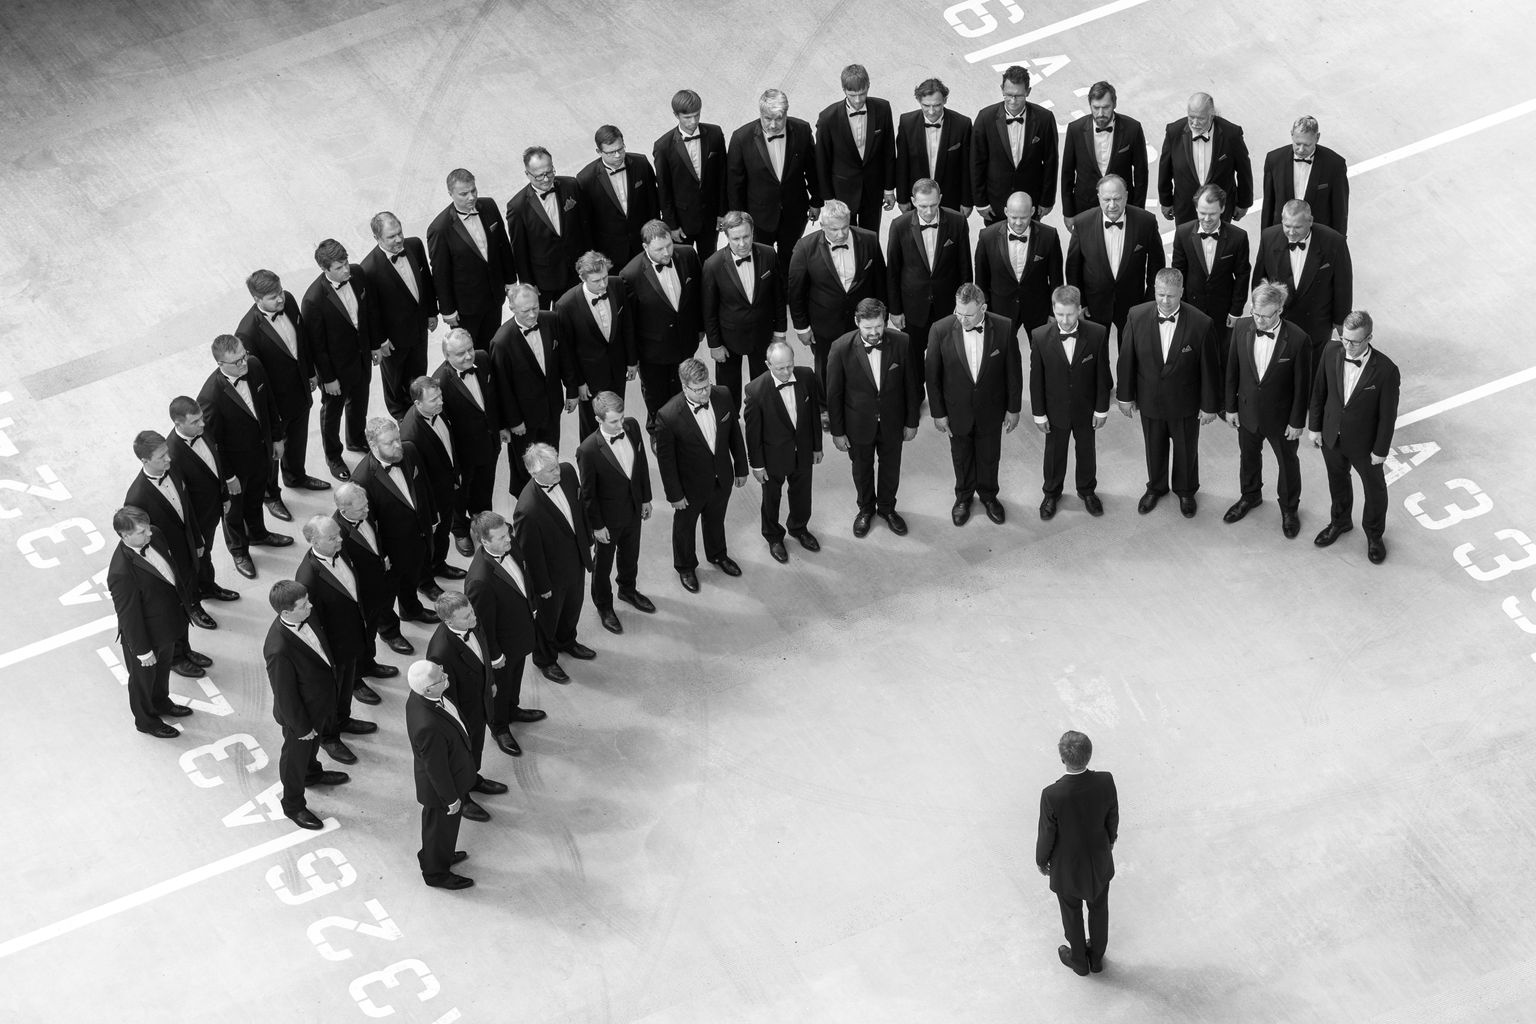 Эстонский национальный мужской хор (RAM) даст бесплатный концерт в Нарве на сцене Vaba Lava. Коллектив выступит полным составом в 50 человек.